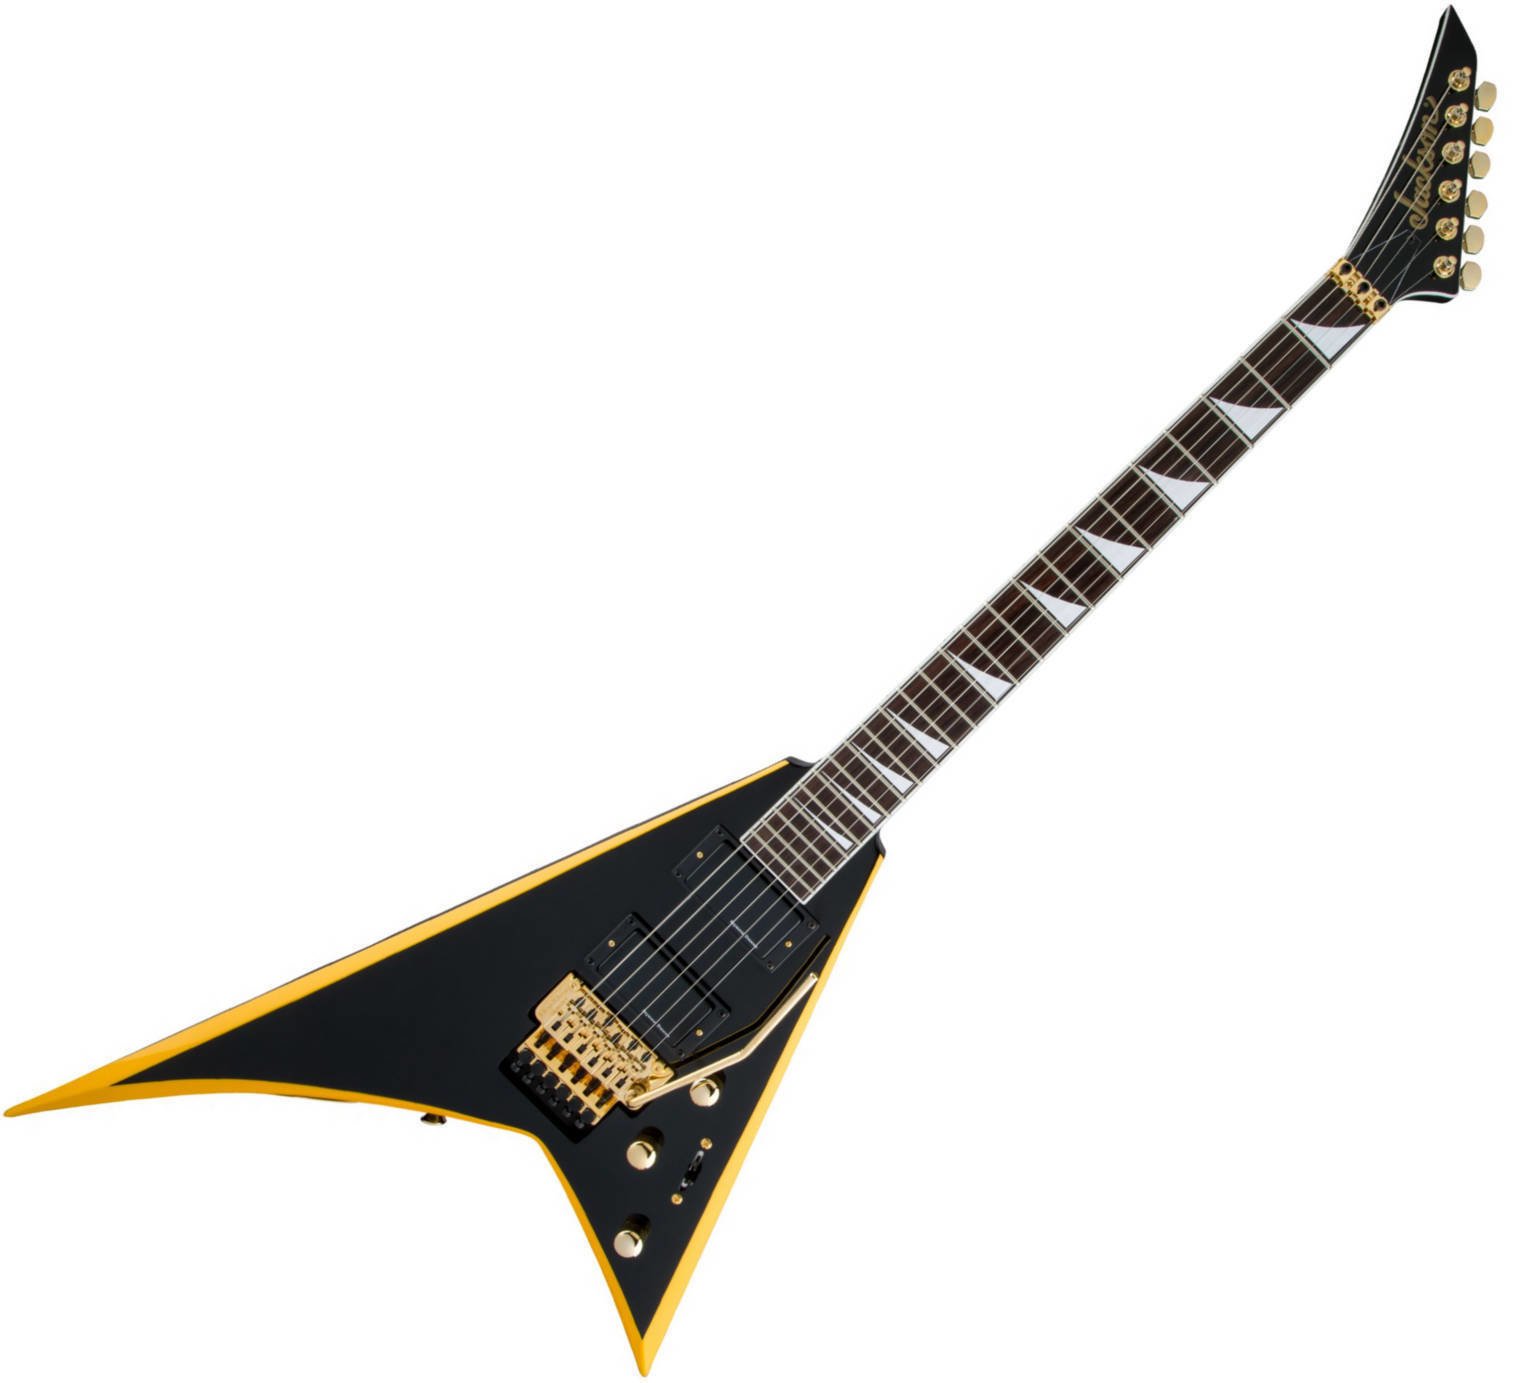 Elektrická kytara Jackson X Series Rhoads RRX24 IL BLK with YLW Bevels